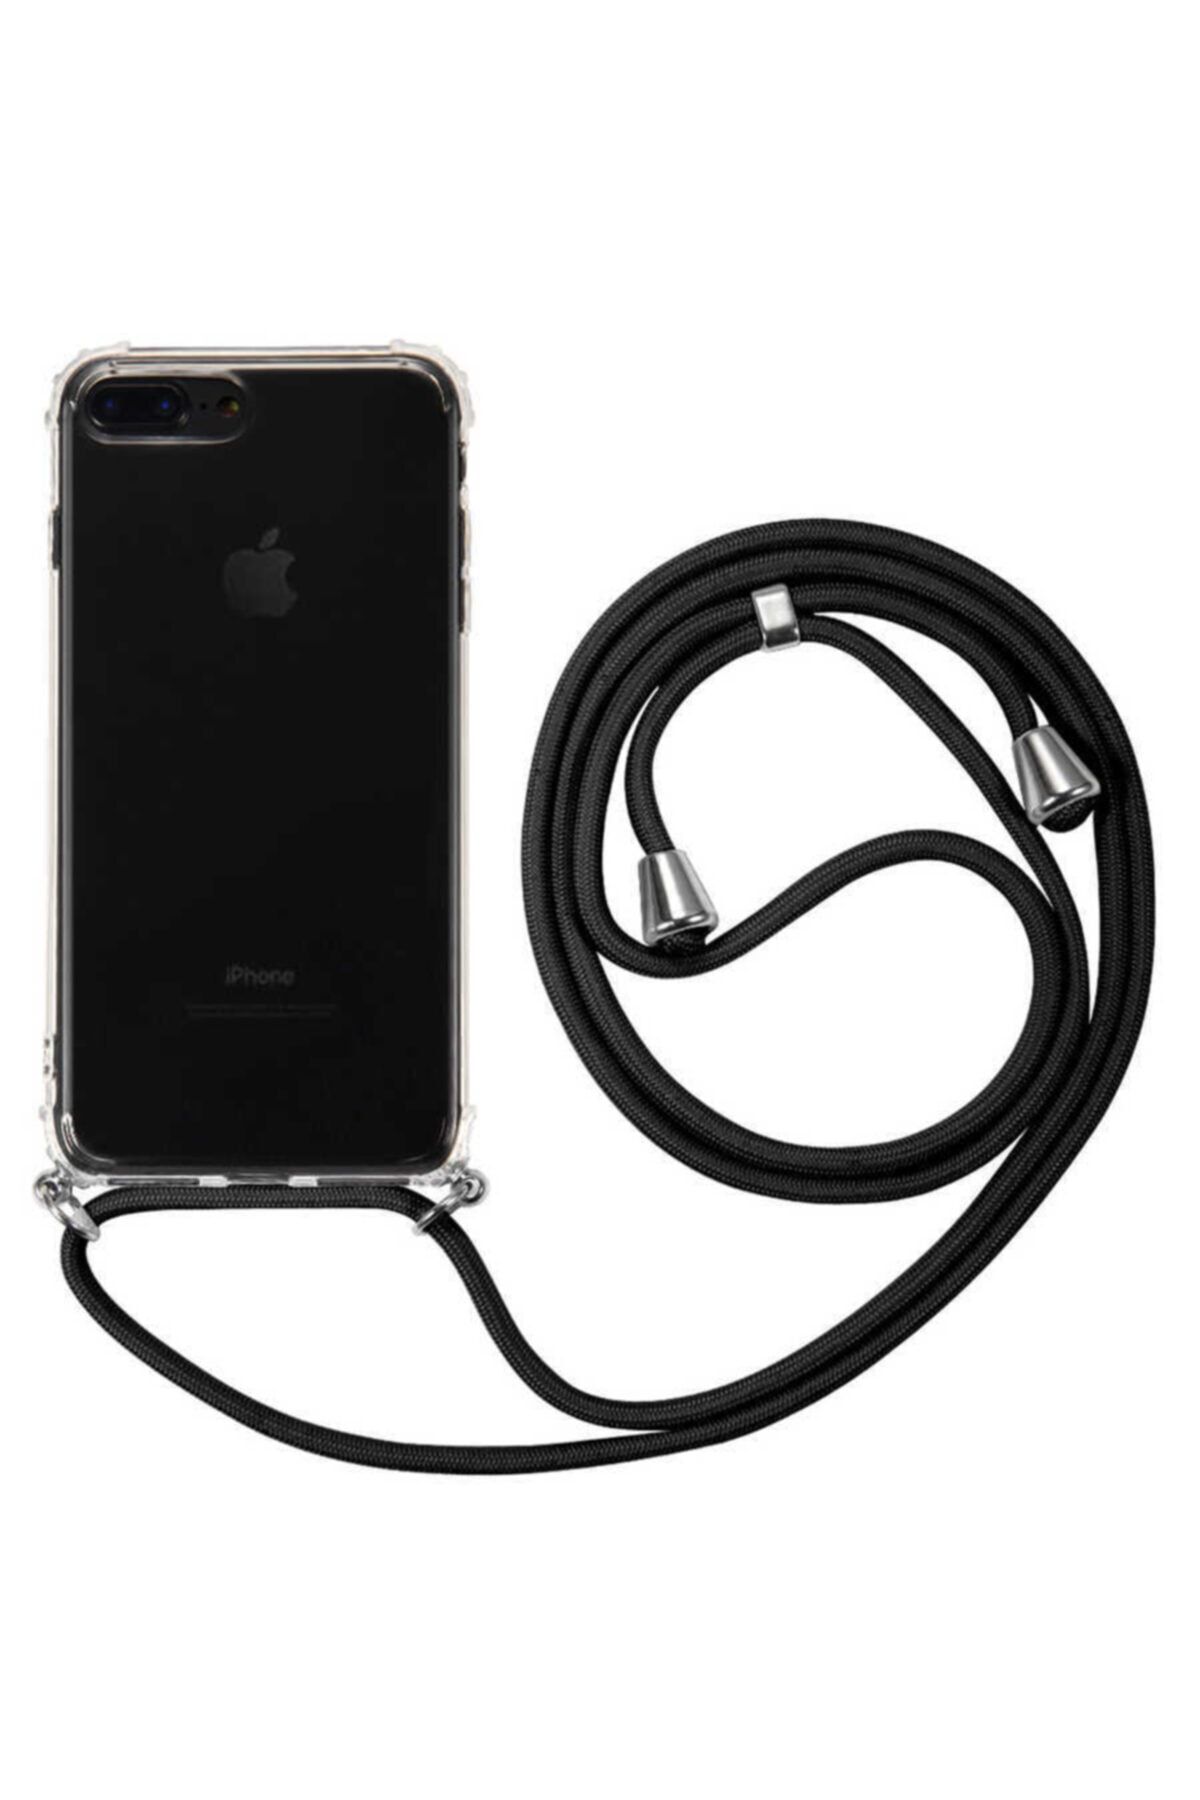 Fibaks Apple Iphone 8 Plus Ile Uyumlu Kılıf Ipli Boyun Askılı Köşe Korumalı Şeffaf Kapak